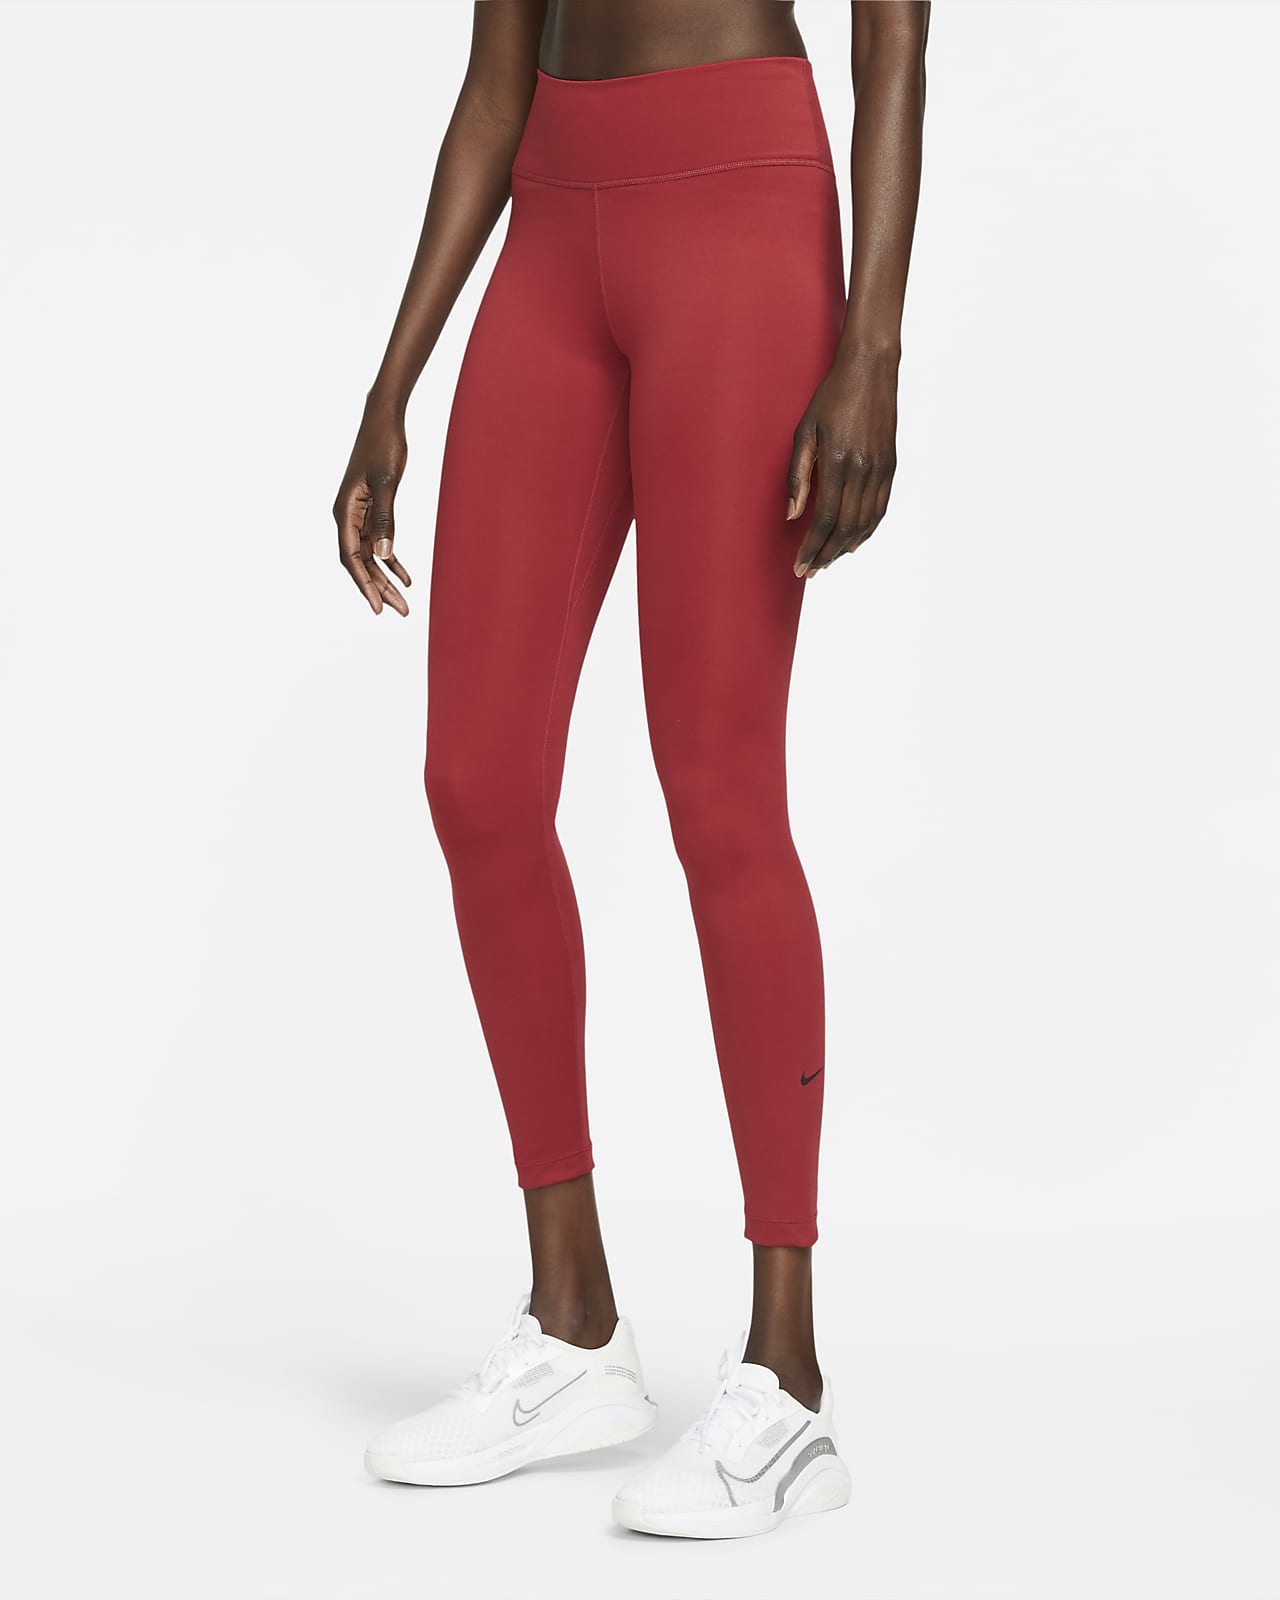 Nike Dri-FIT One Leggings mit mittelhohem Bund für Damen